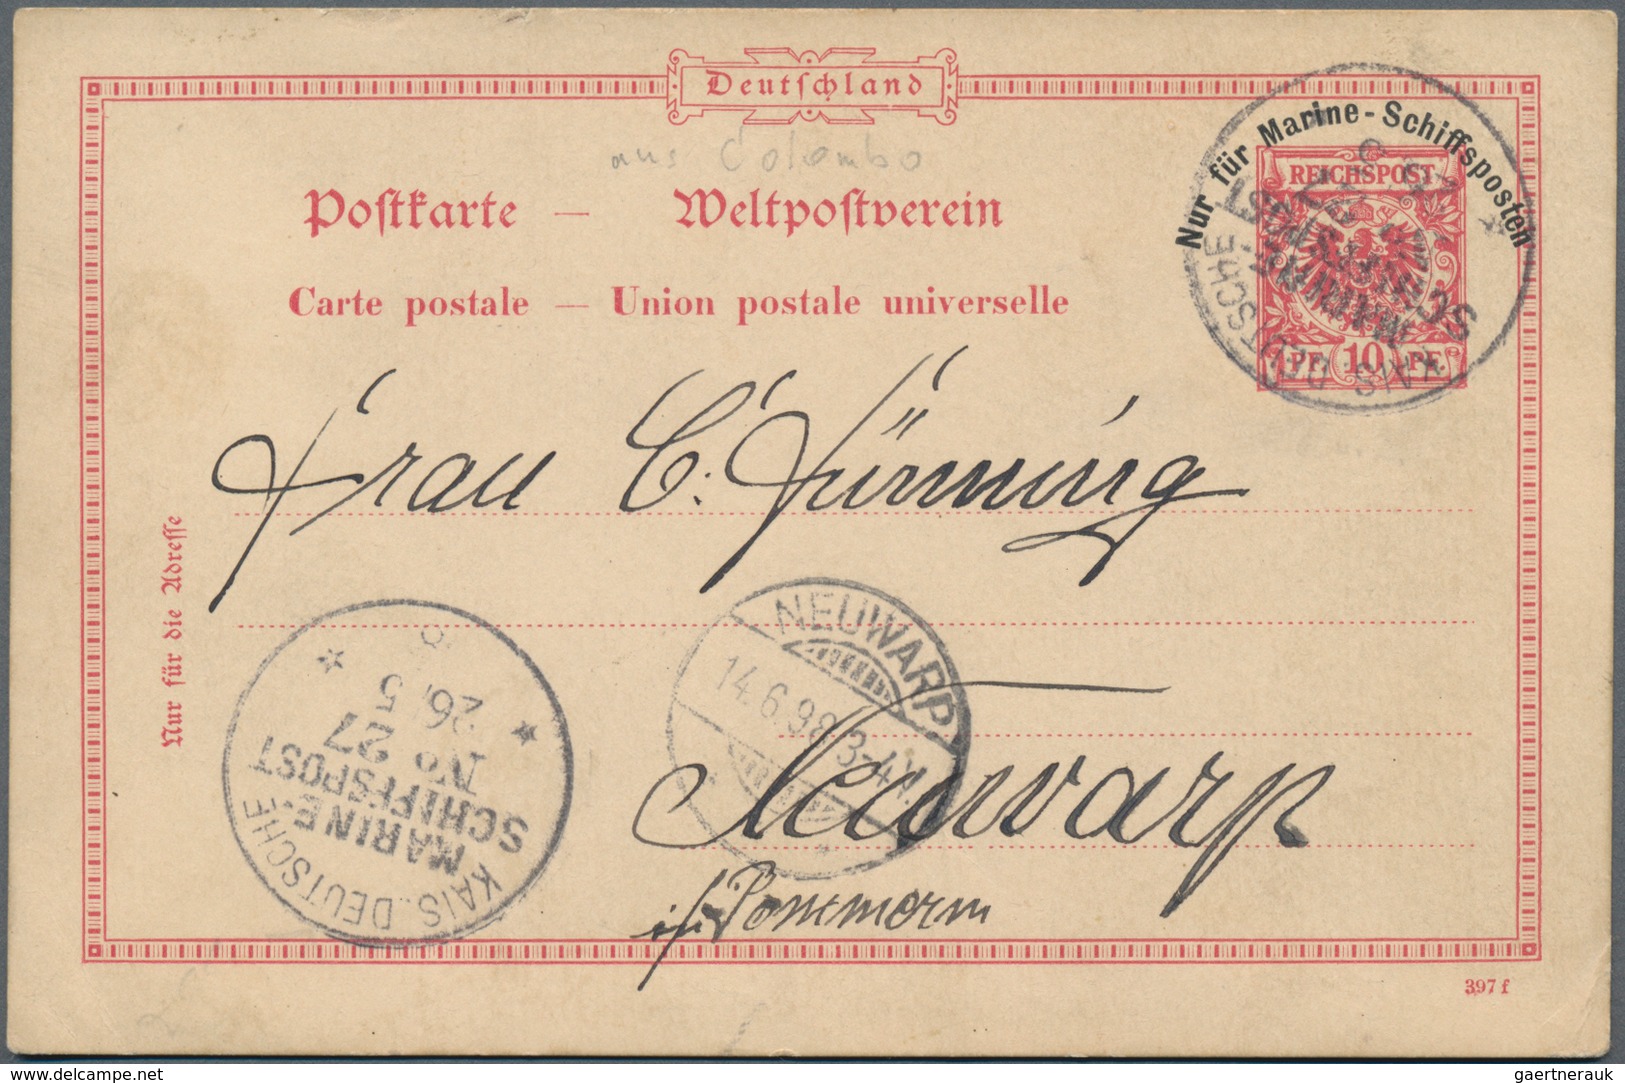 Deutsche Kolonien - Kiautschou: 1897/1898, kleine Spezialsammlung von vier Belegen der dt. Kriegssch